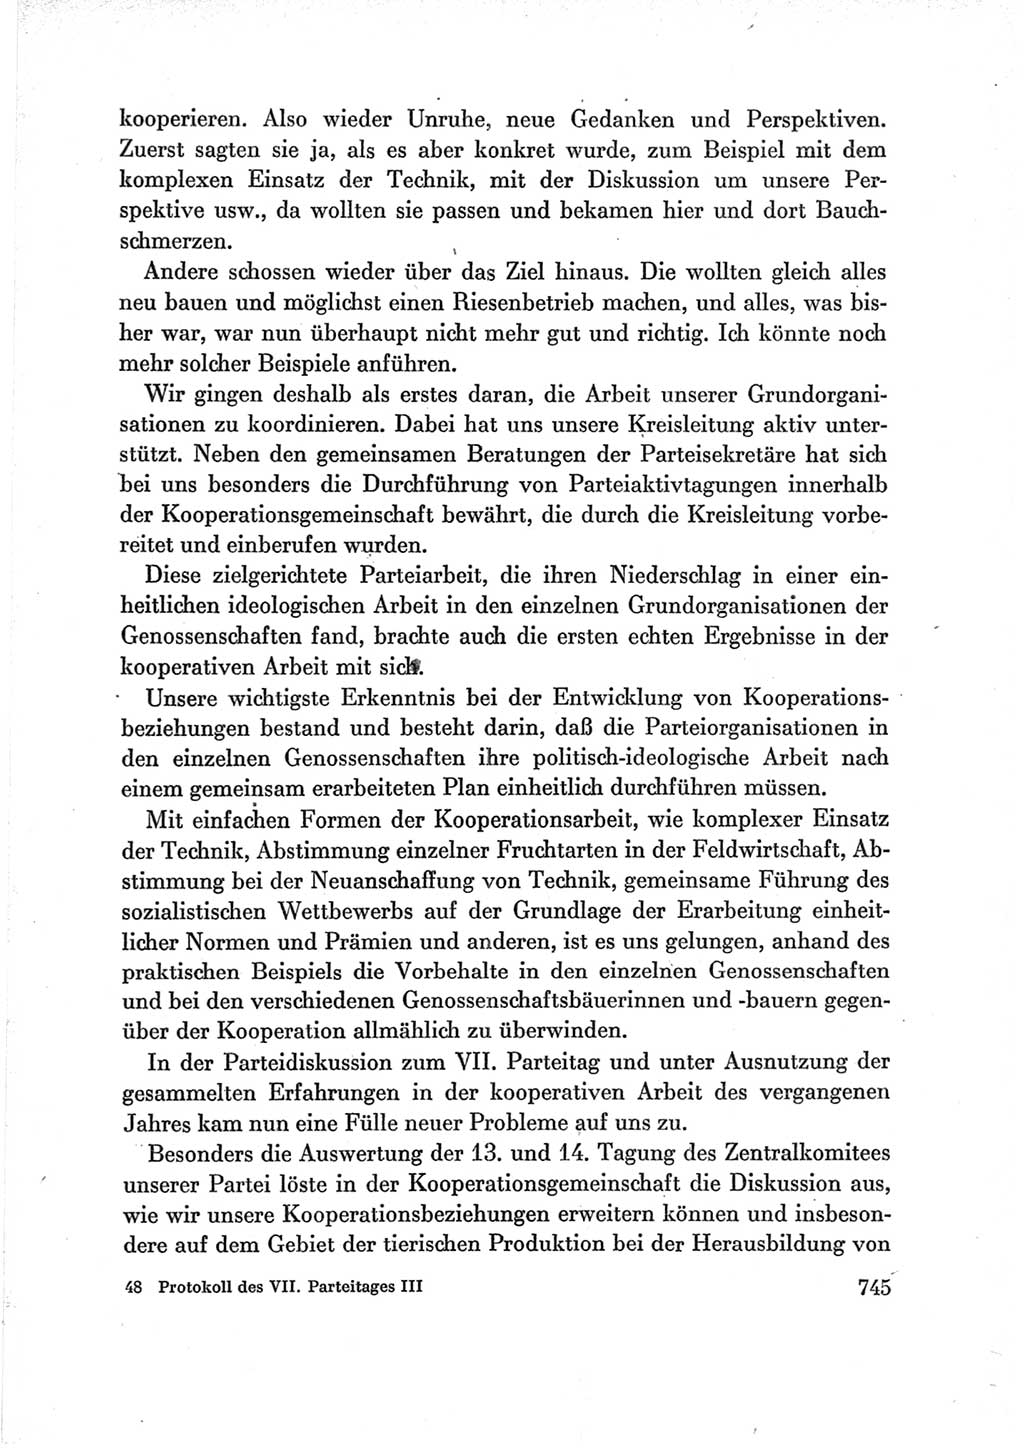 Protokoll der Verhandlungen des Ⅶ. Parteitages der Sozialistischen Einheitspartei Deutschlands (SED) [Deutsche Demokratische Republik (DDR)] 1967, Band Ⅲ, Seite 745 (Prot. Verh. Ⅶ. PT SED DDR 1967, Bd. Ⅲ, S. 745)